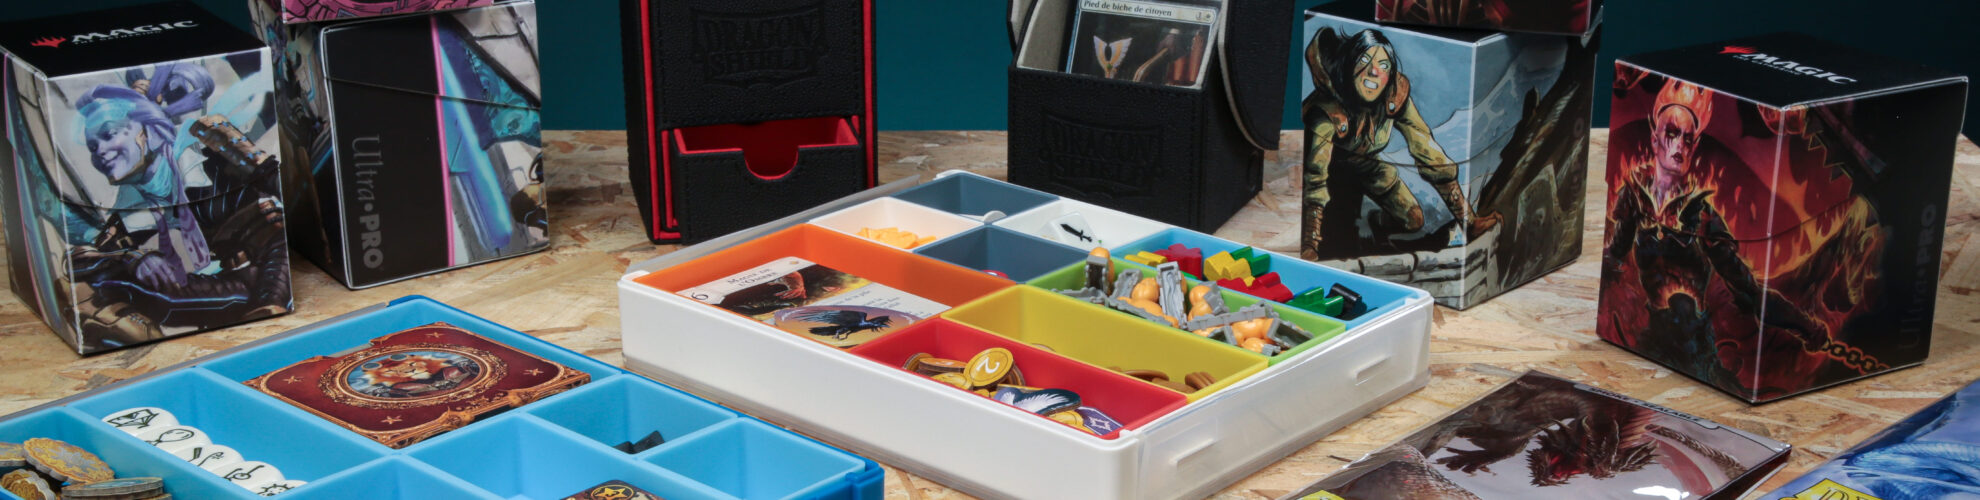 Boite en plastique pour ranger cartes jouer et accessoires de jeux style  valise